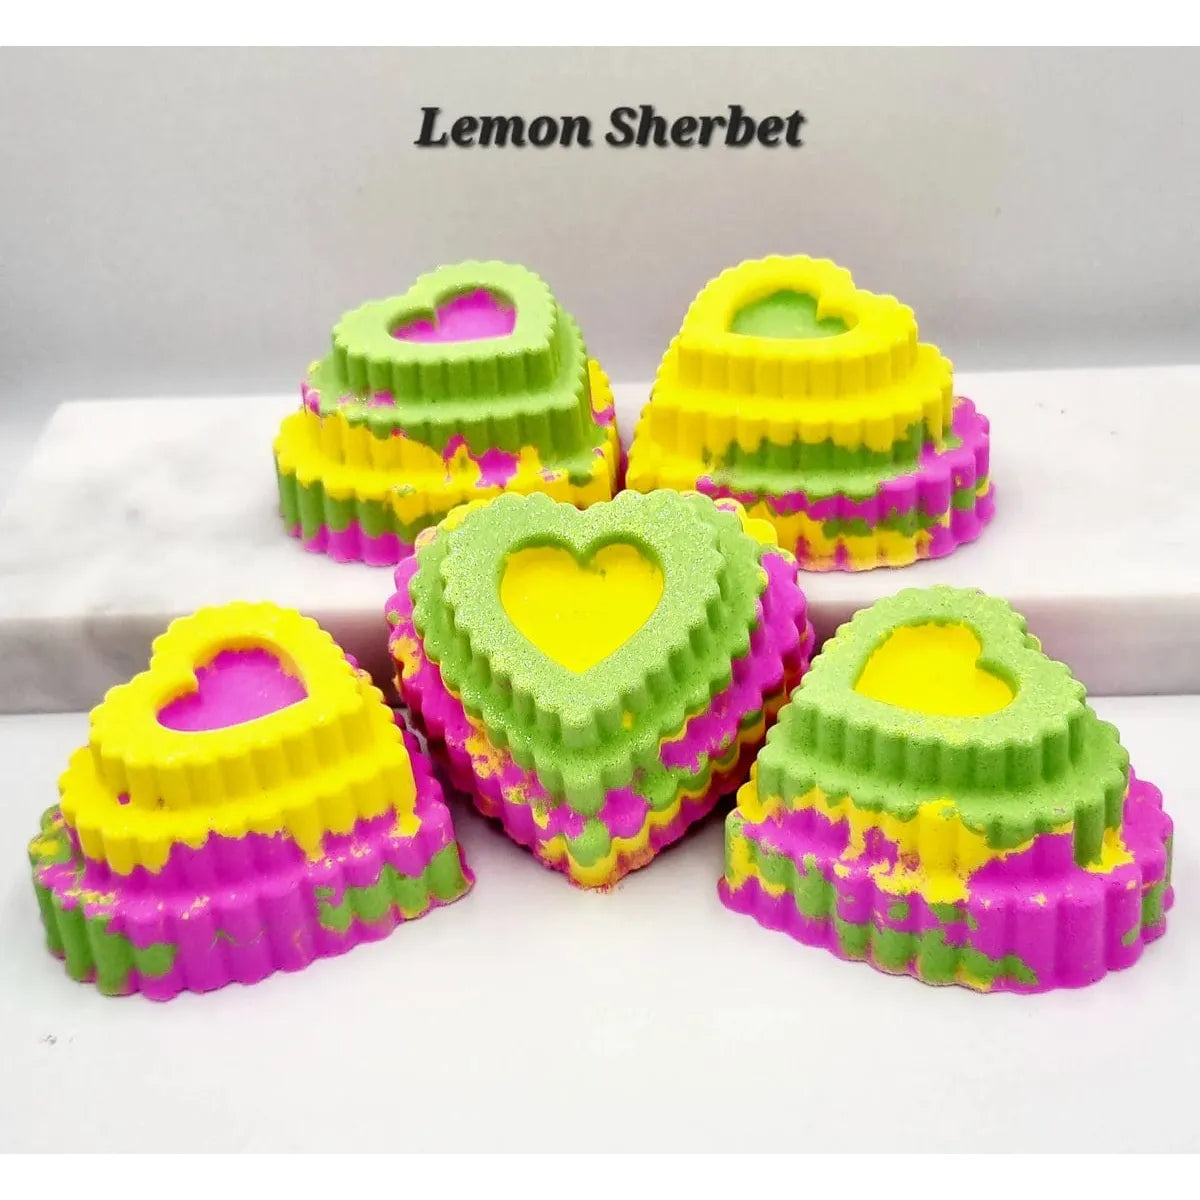 Glamfizz Lemon Sherbet Bath Bomb